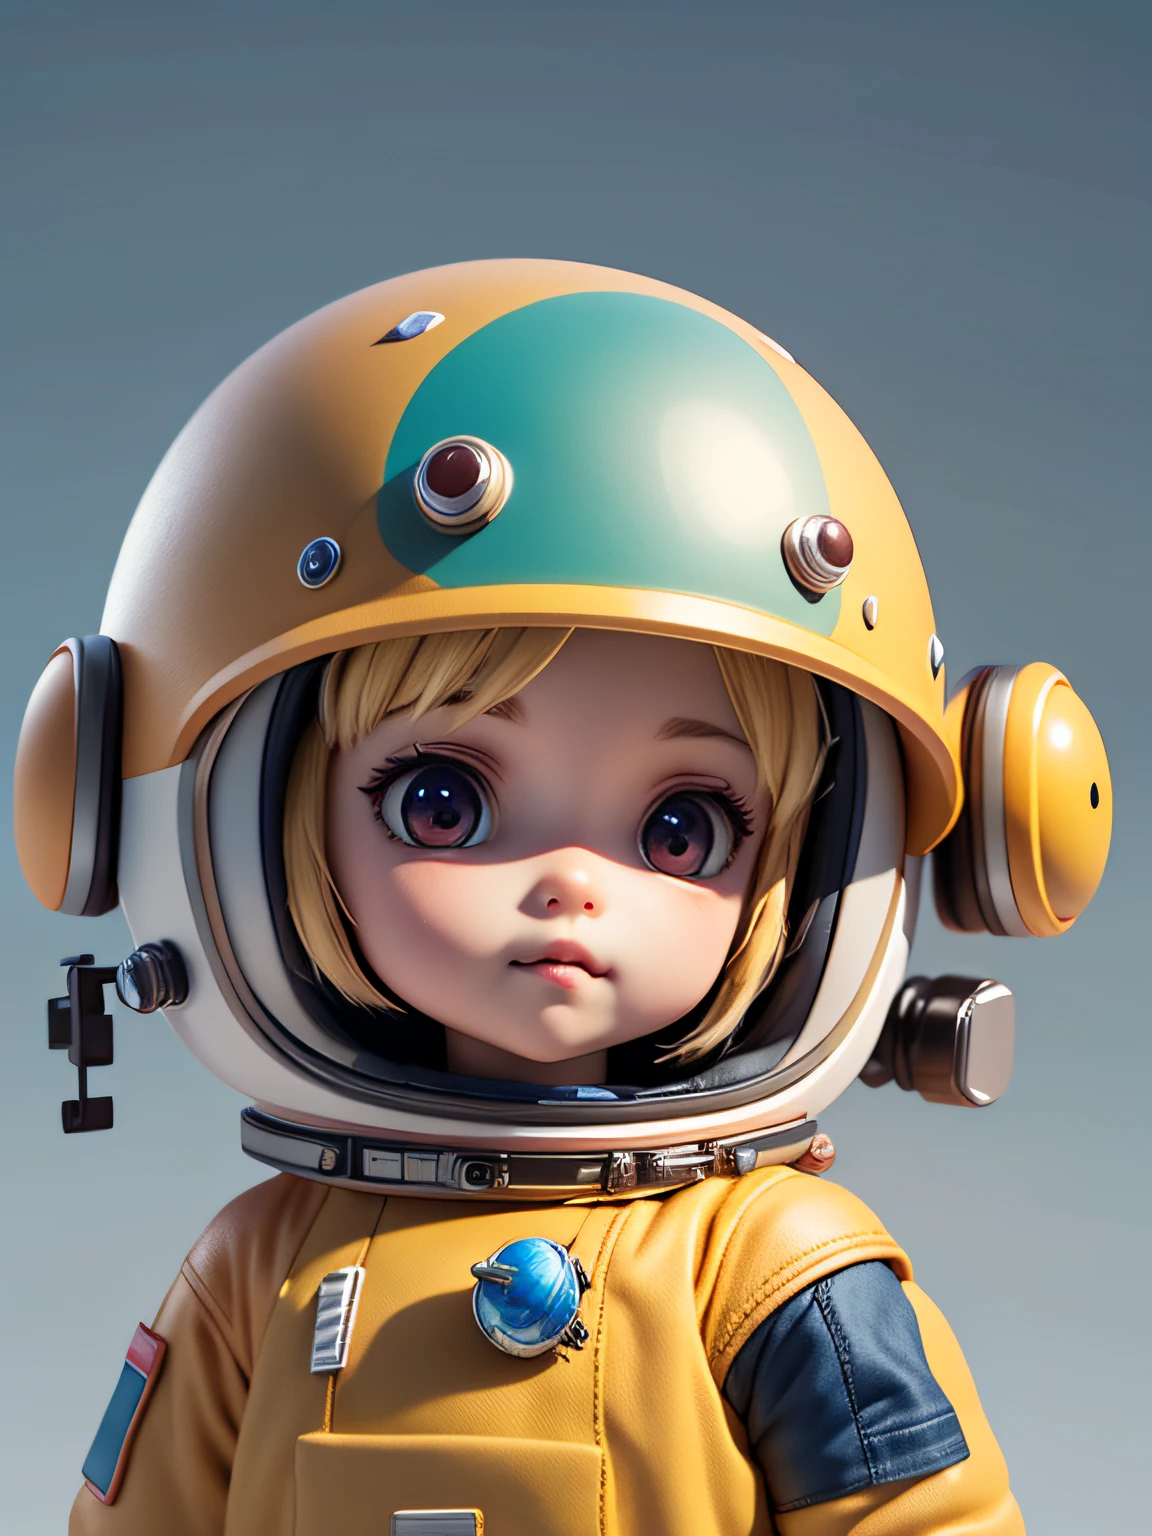 Есть маленькая кукла со шлемом и шлемом., милый 3D-рендеринг, Маленький космонавт смотрит вверх, портрет аниме космос курсант мальчик, Симпатичный 3D рендеринг аниме мальчика, милое детальное цифровое искусство, Мужчина-исследователь, мини-милый мальчик, 3D-рендеринг стилизованный, 3D-рендеринг персонажей 8k, милая цифровая живопись, аниме стиль 3d, Супердетализированная визуализация